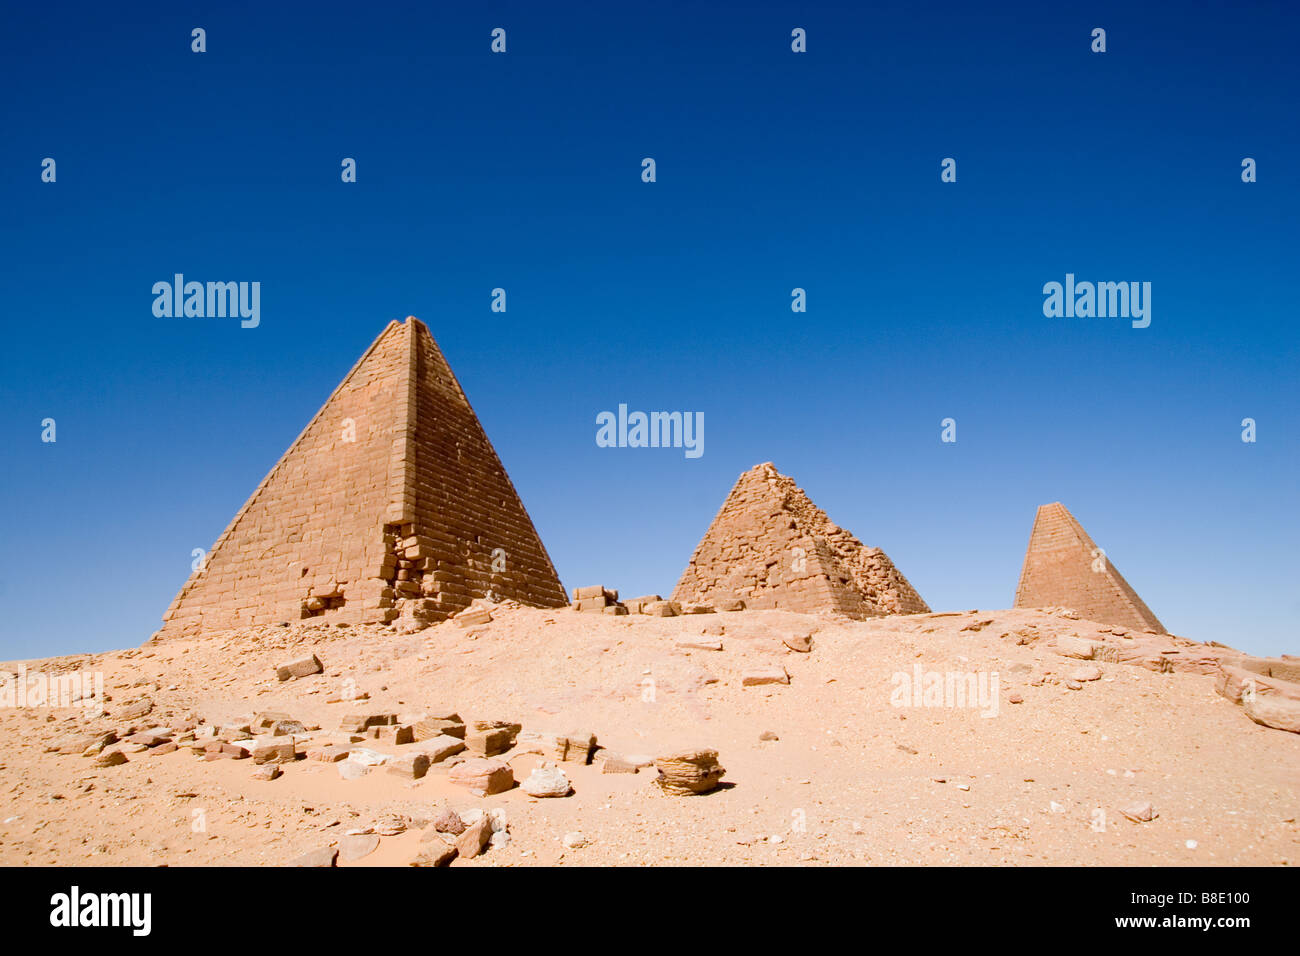 pyramids of karima sudan Stock Photo